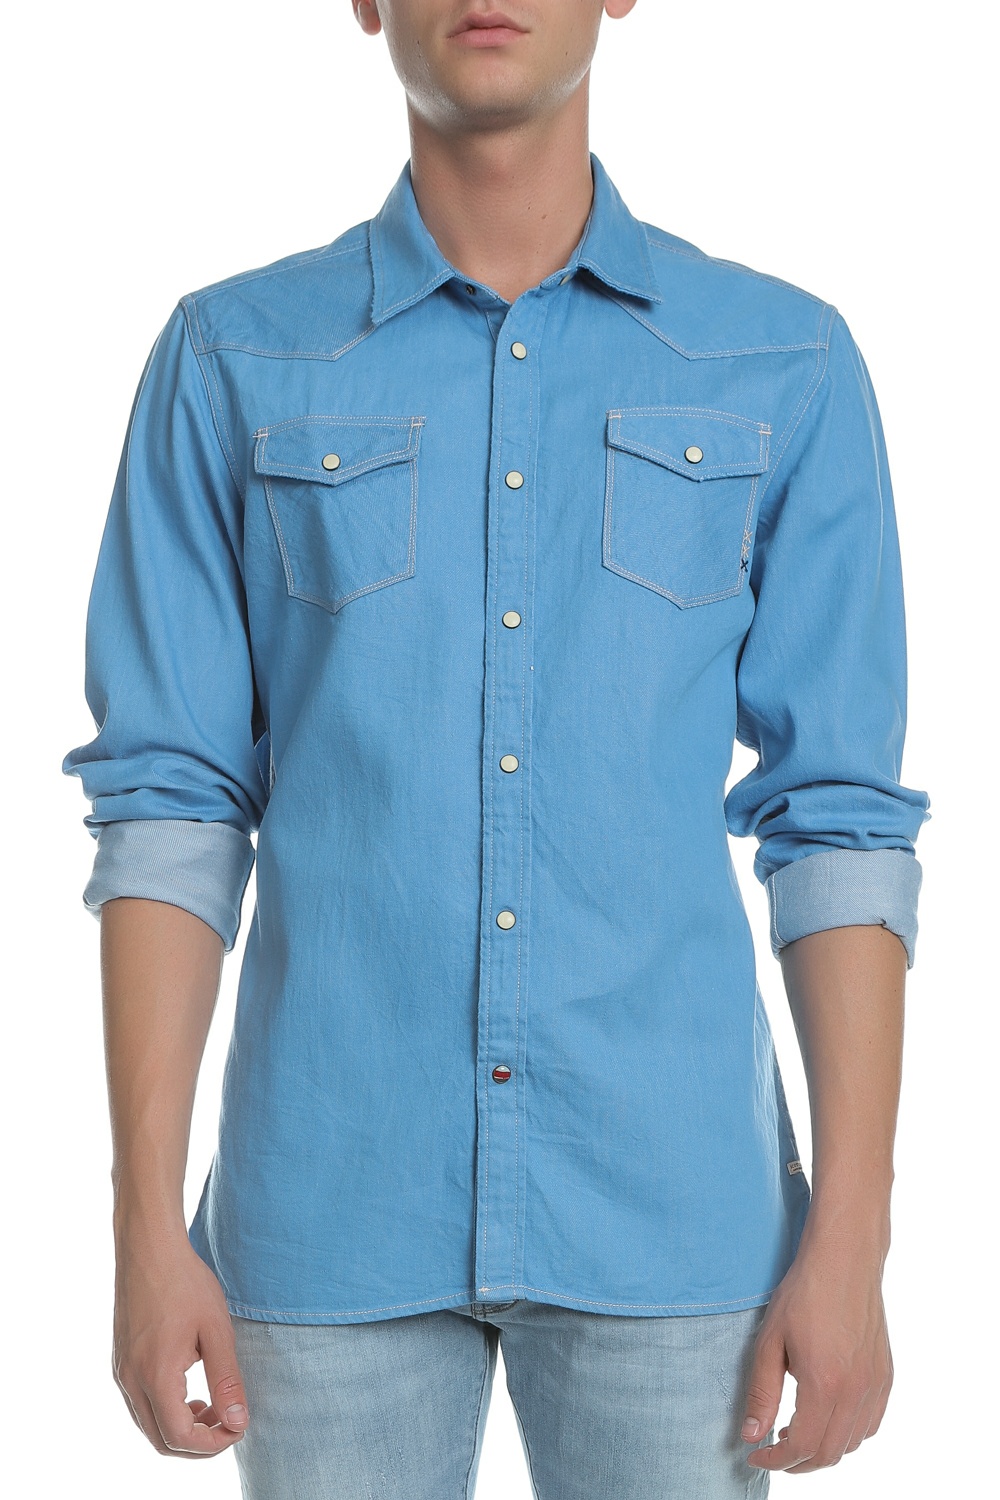 Ανδρικά/Ρούχα/Πουκάμισα/Μακρυμάνικα SCOTCH & SODA - Ανδρικό τζιν πουκάμισο Scotch & Soda μπλε